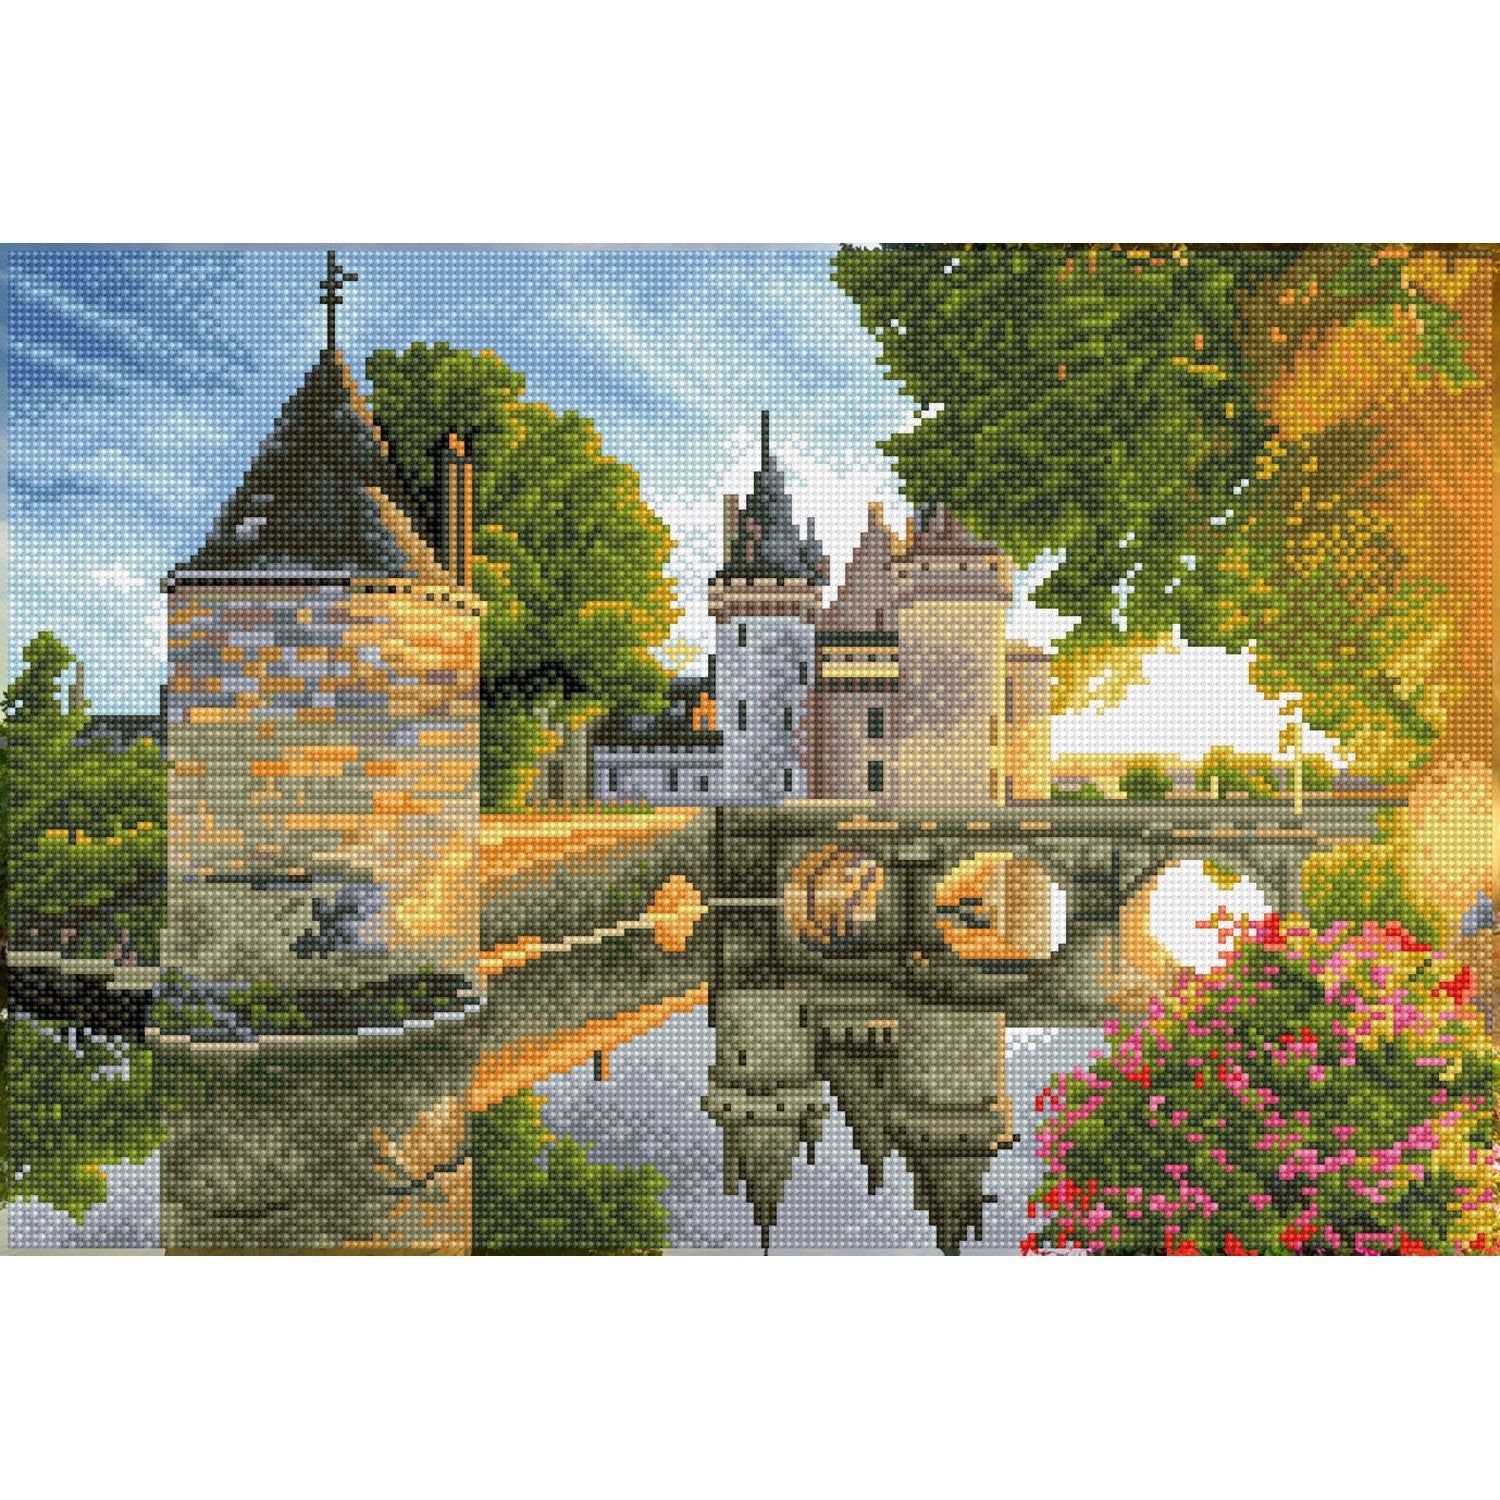 River Castle - Avancé Carré